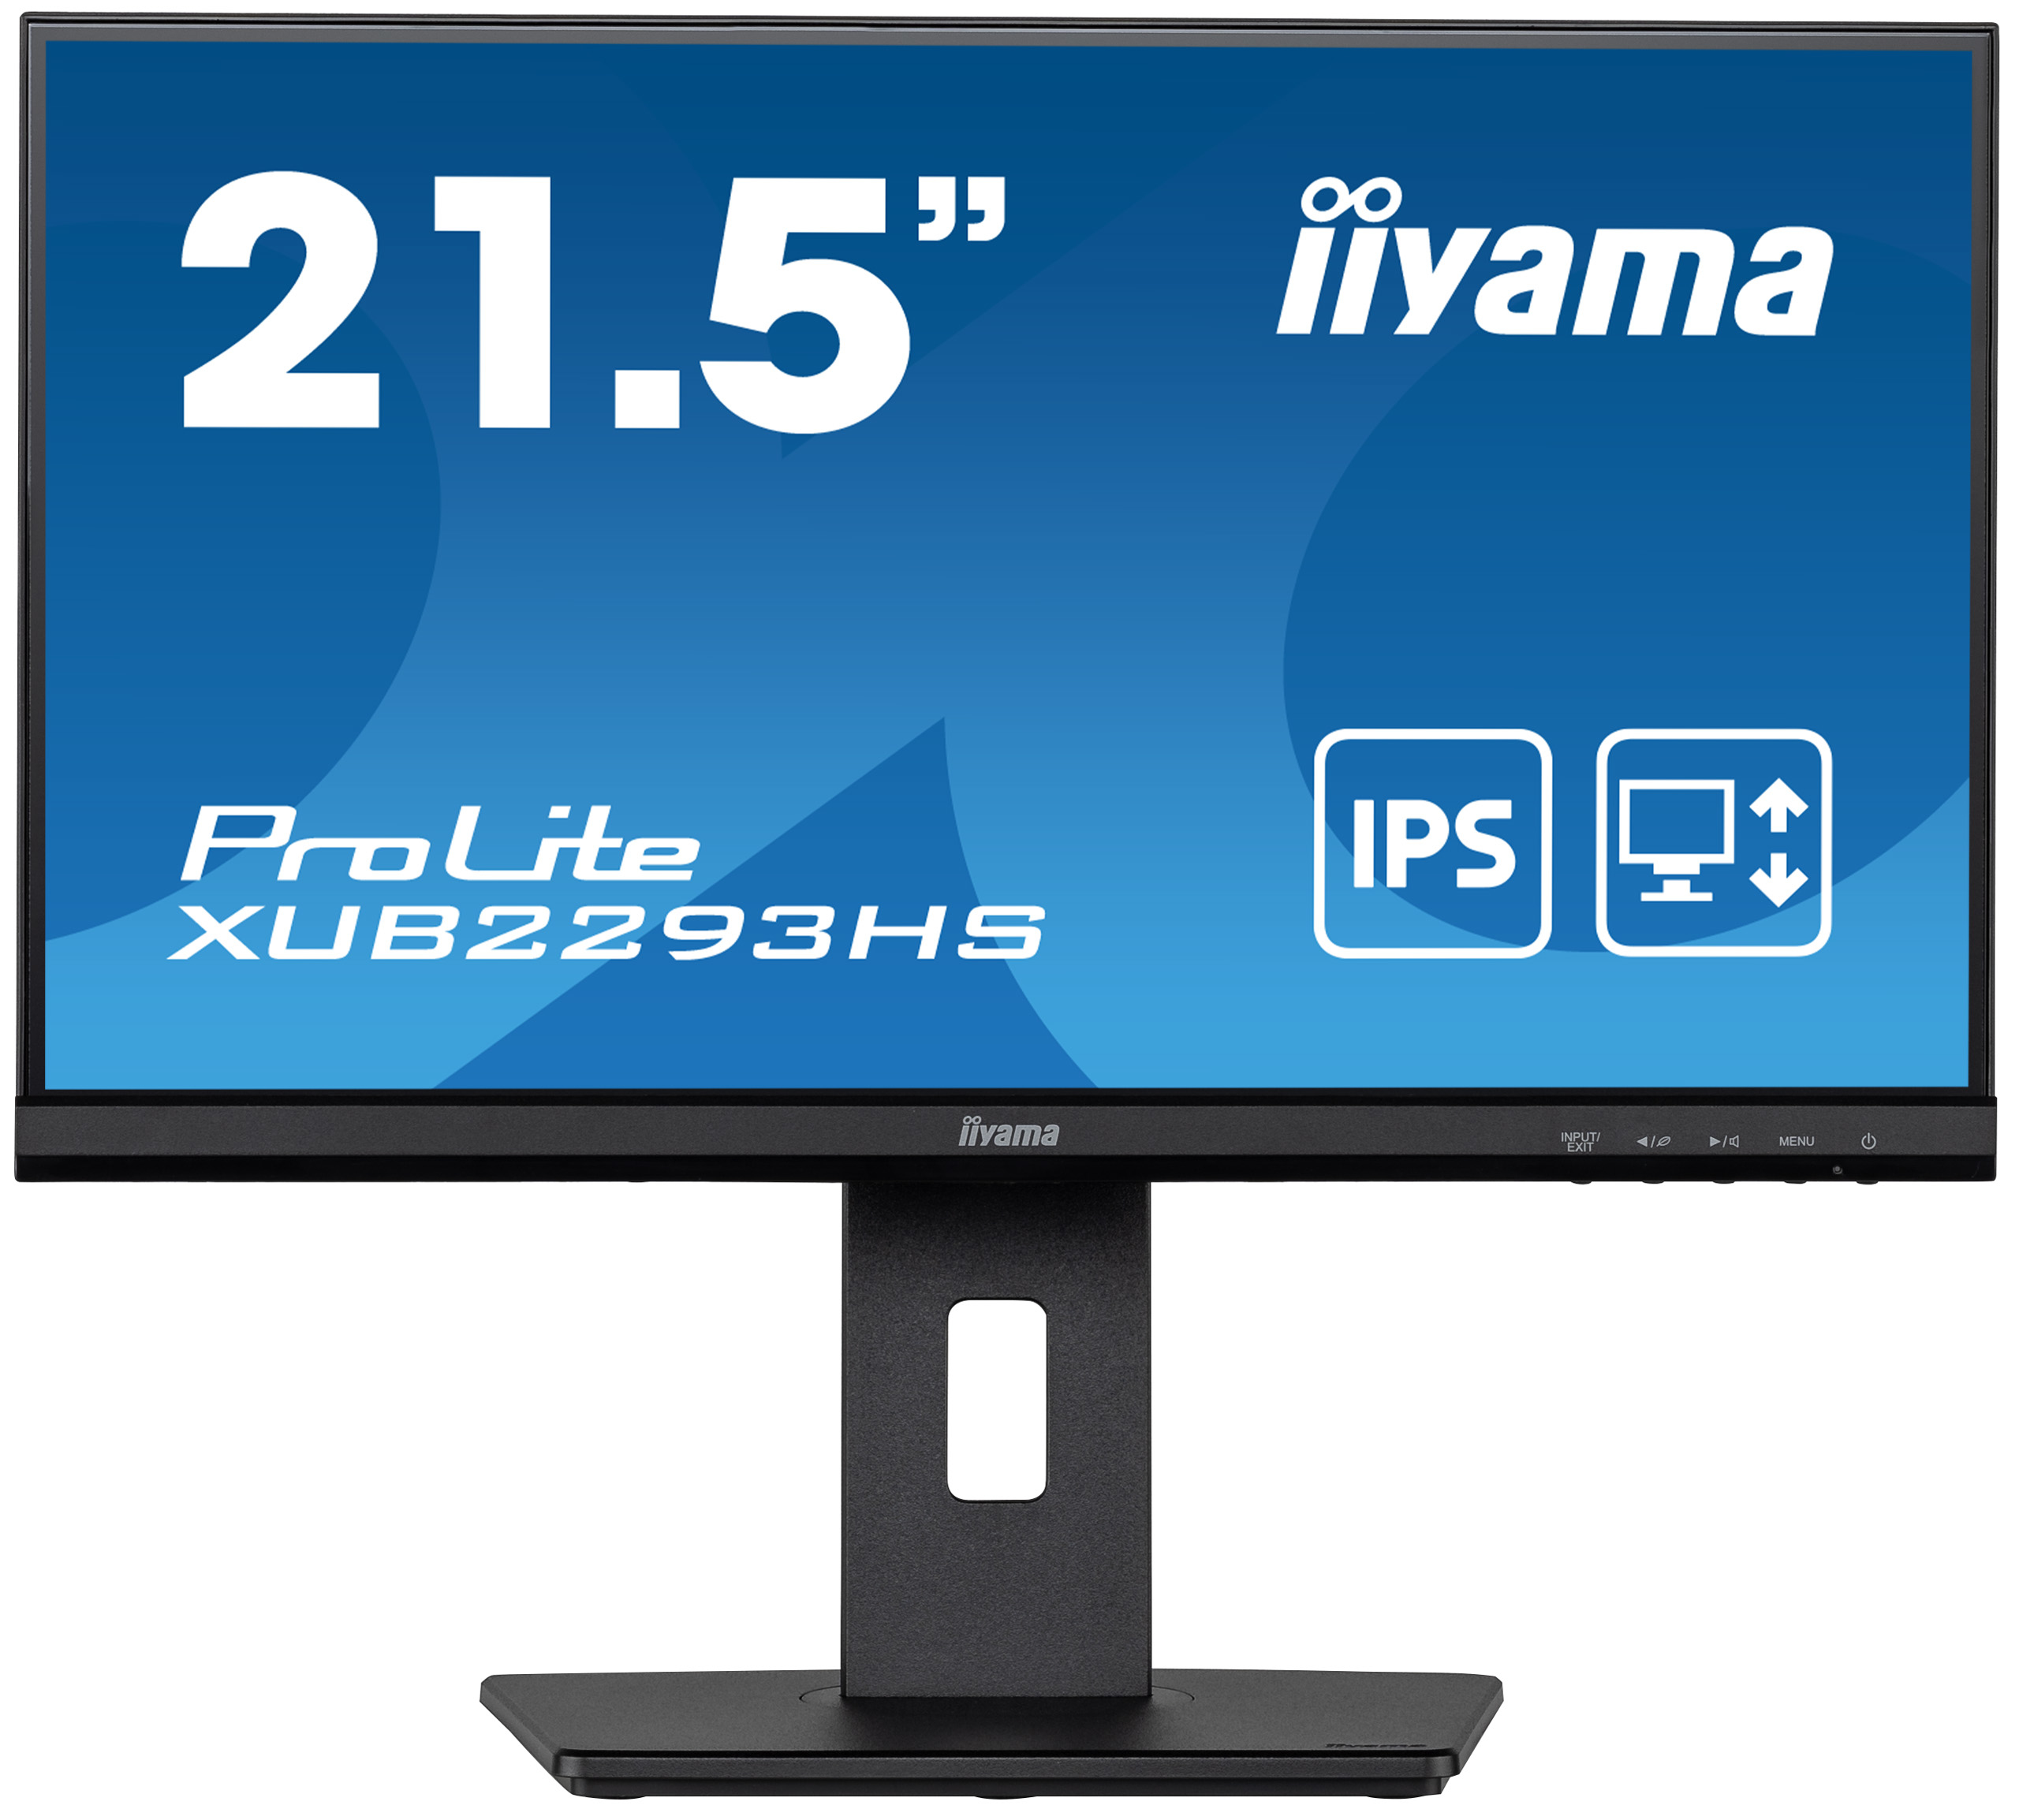 IIYAMA Monitor XUB2293HS-B5